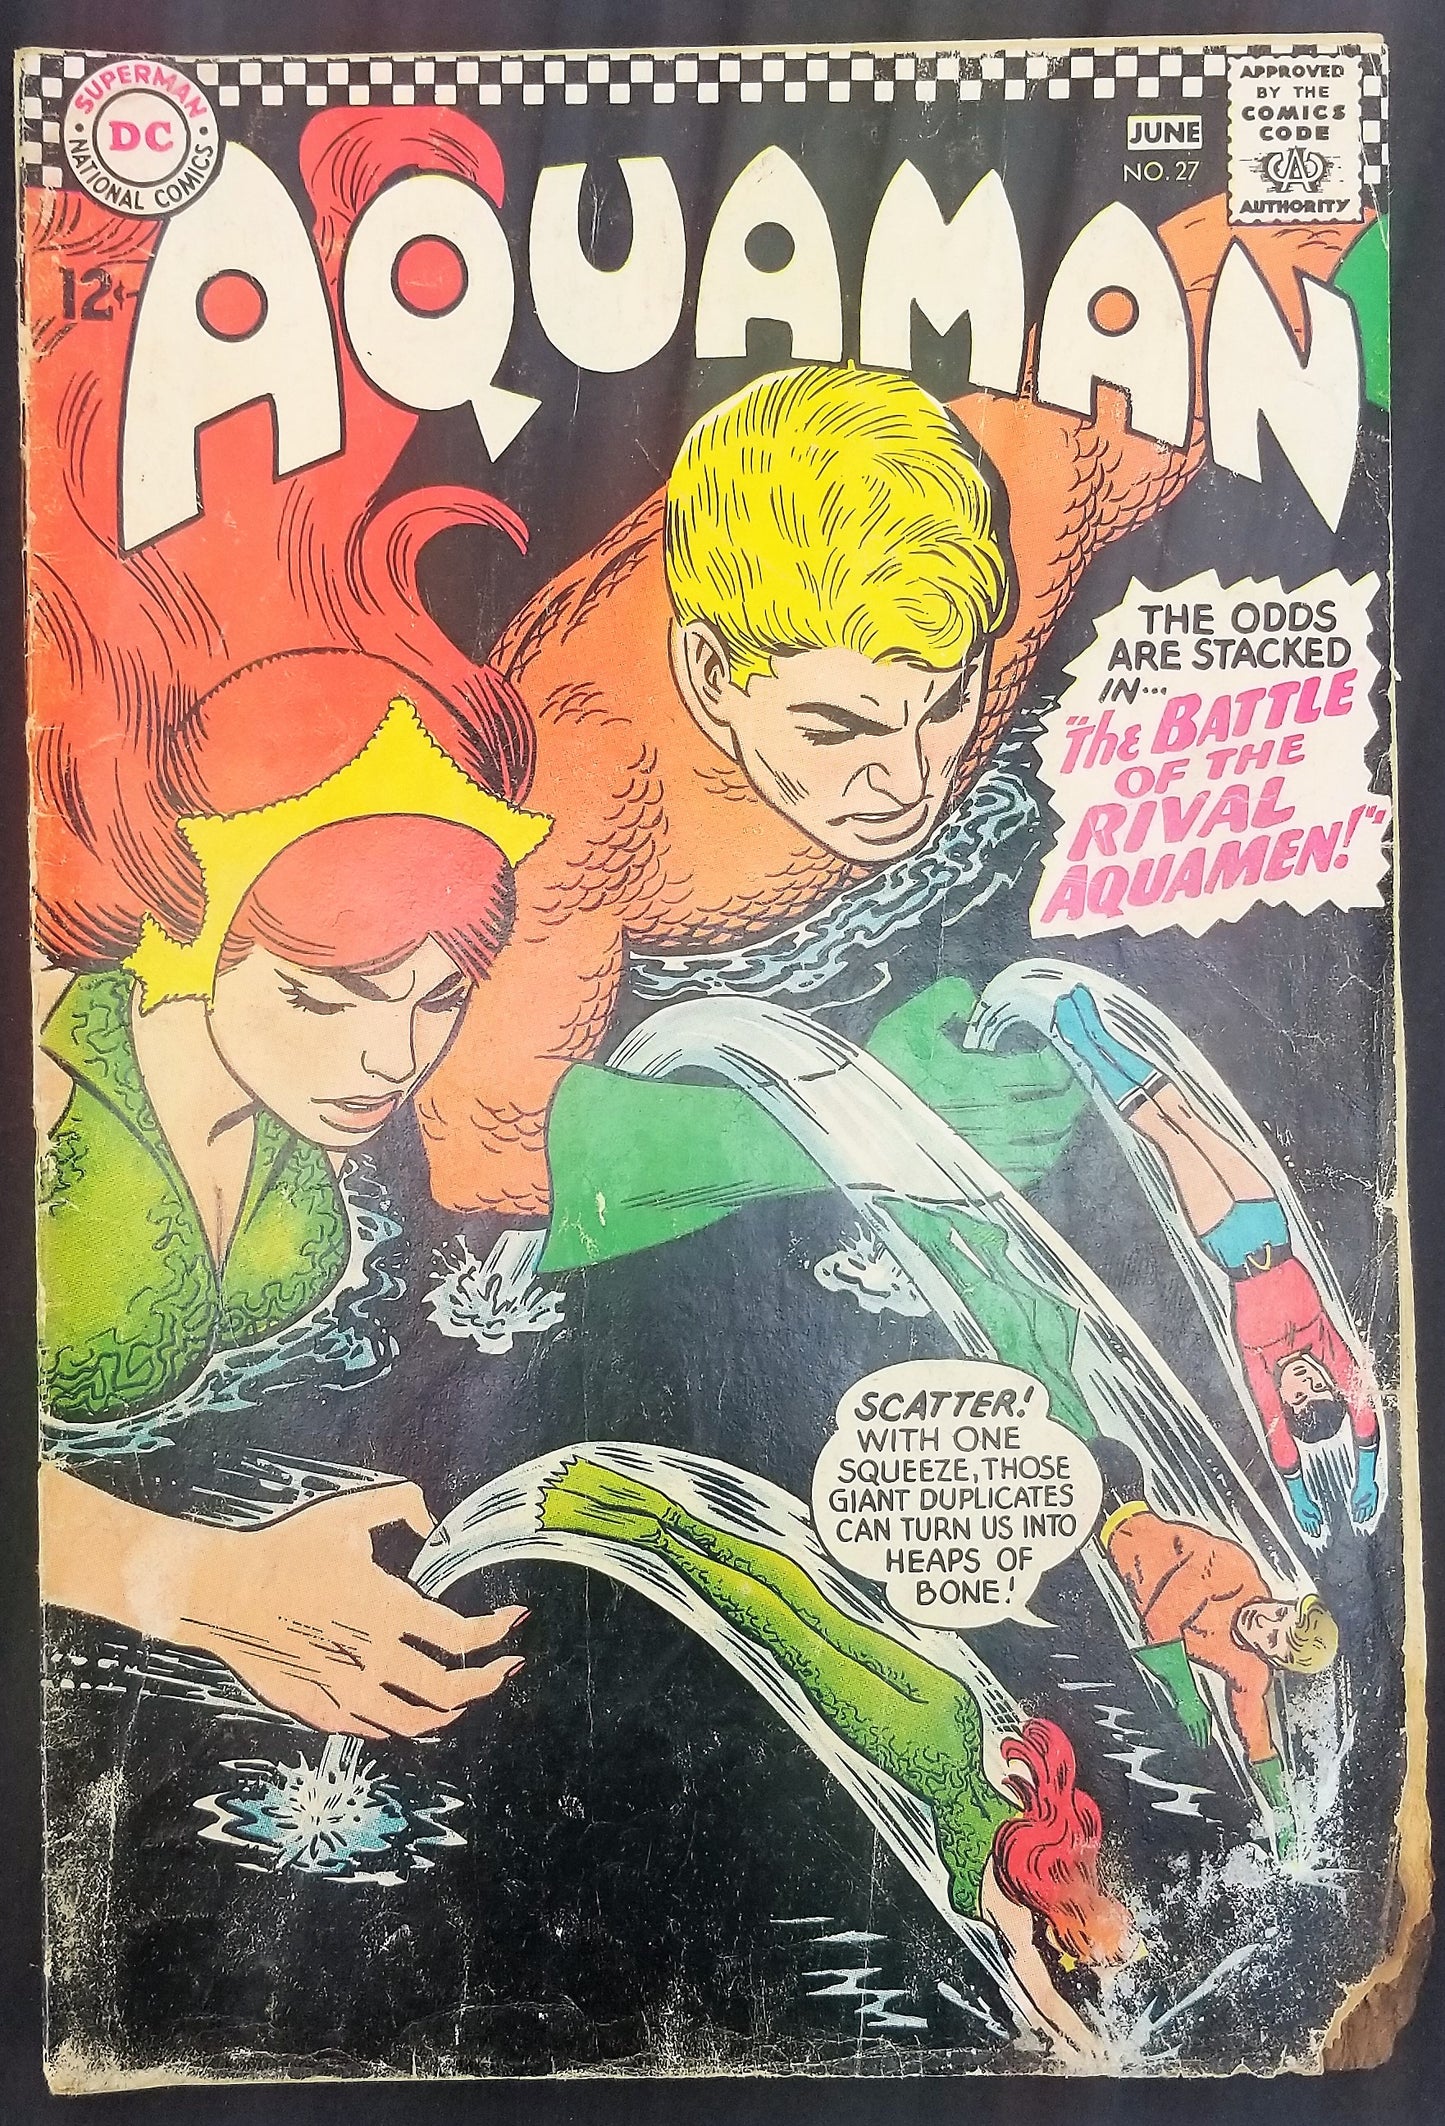 Aquaman No. 27, "The Battle of the Rival Aquamen," DC Comics, June 1966